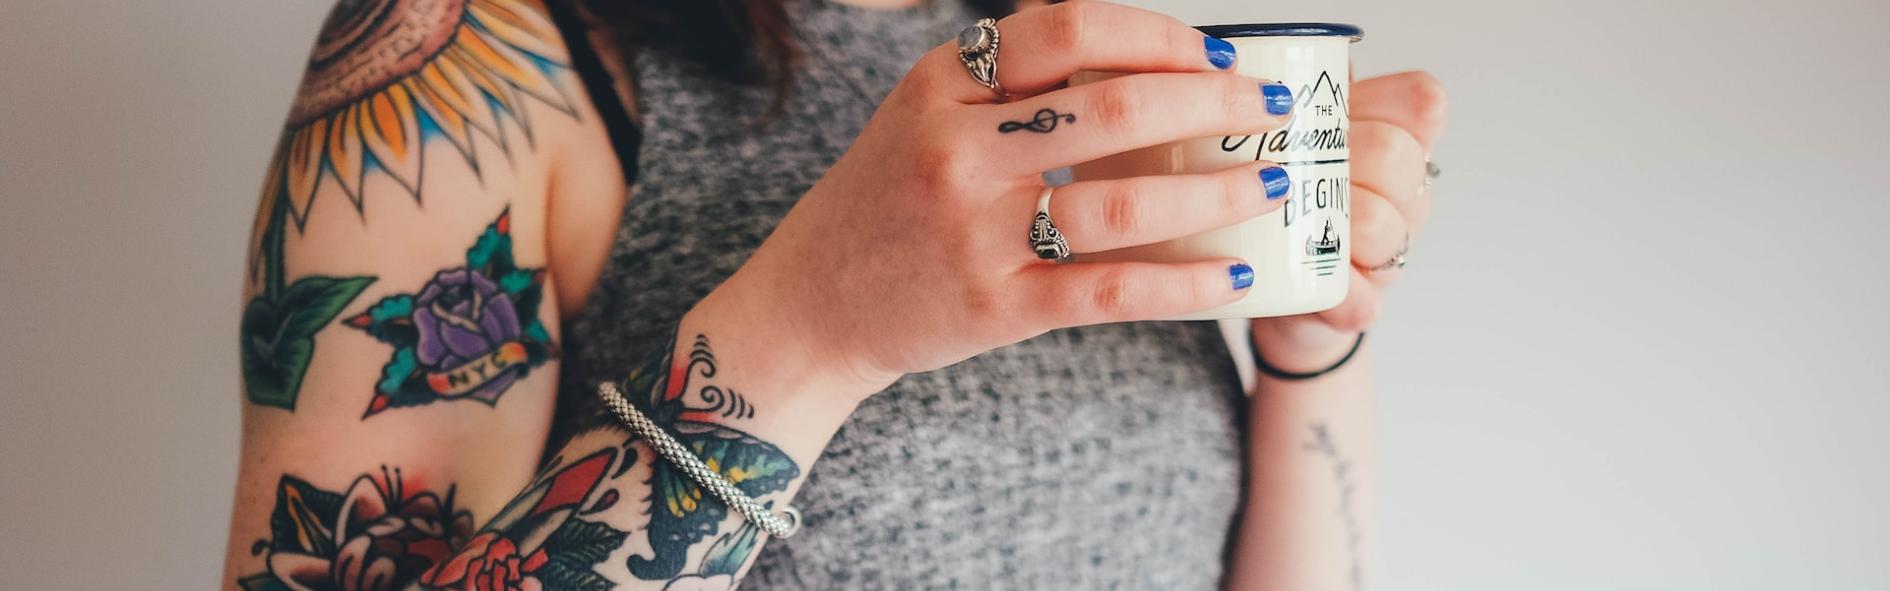 Cómo cuidar un Tatuaje Recién Hecho: tips y consejos